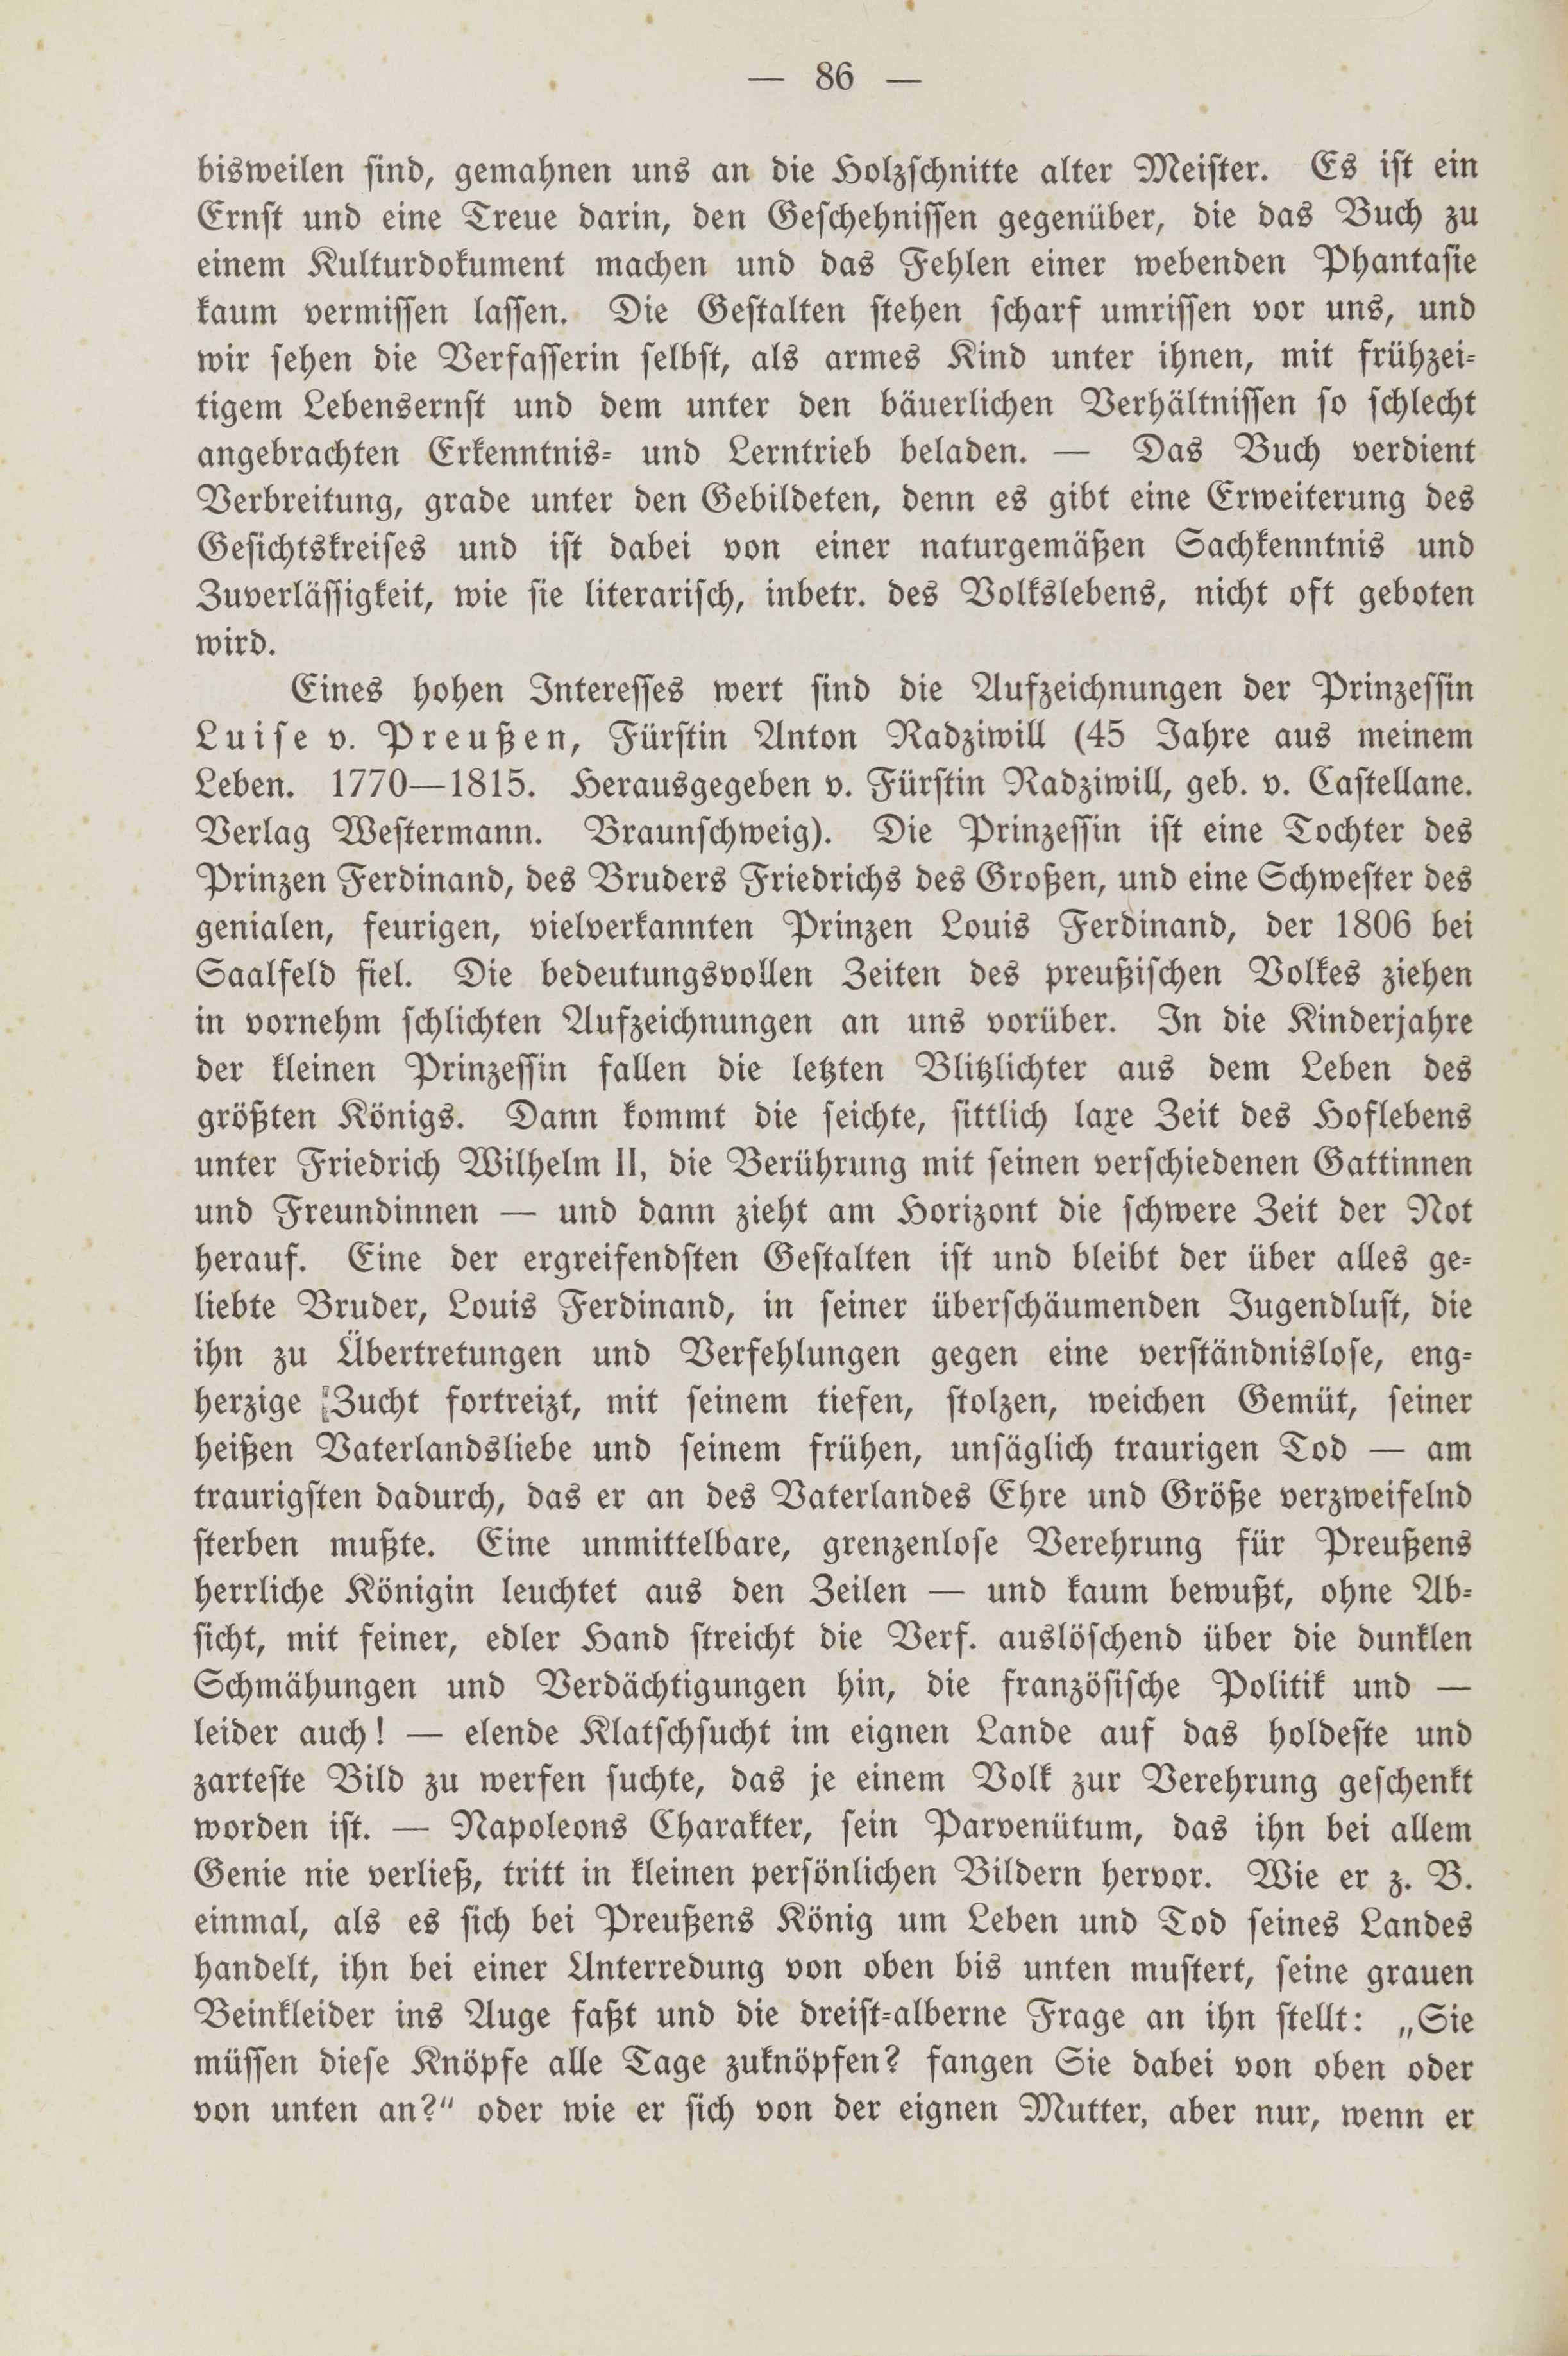 Deutsche Monatsschrift für Russland [2] (1913) | 90. (86) Основной текст